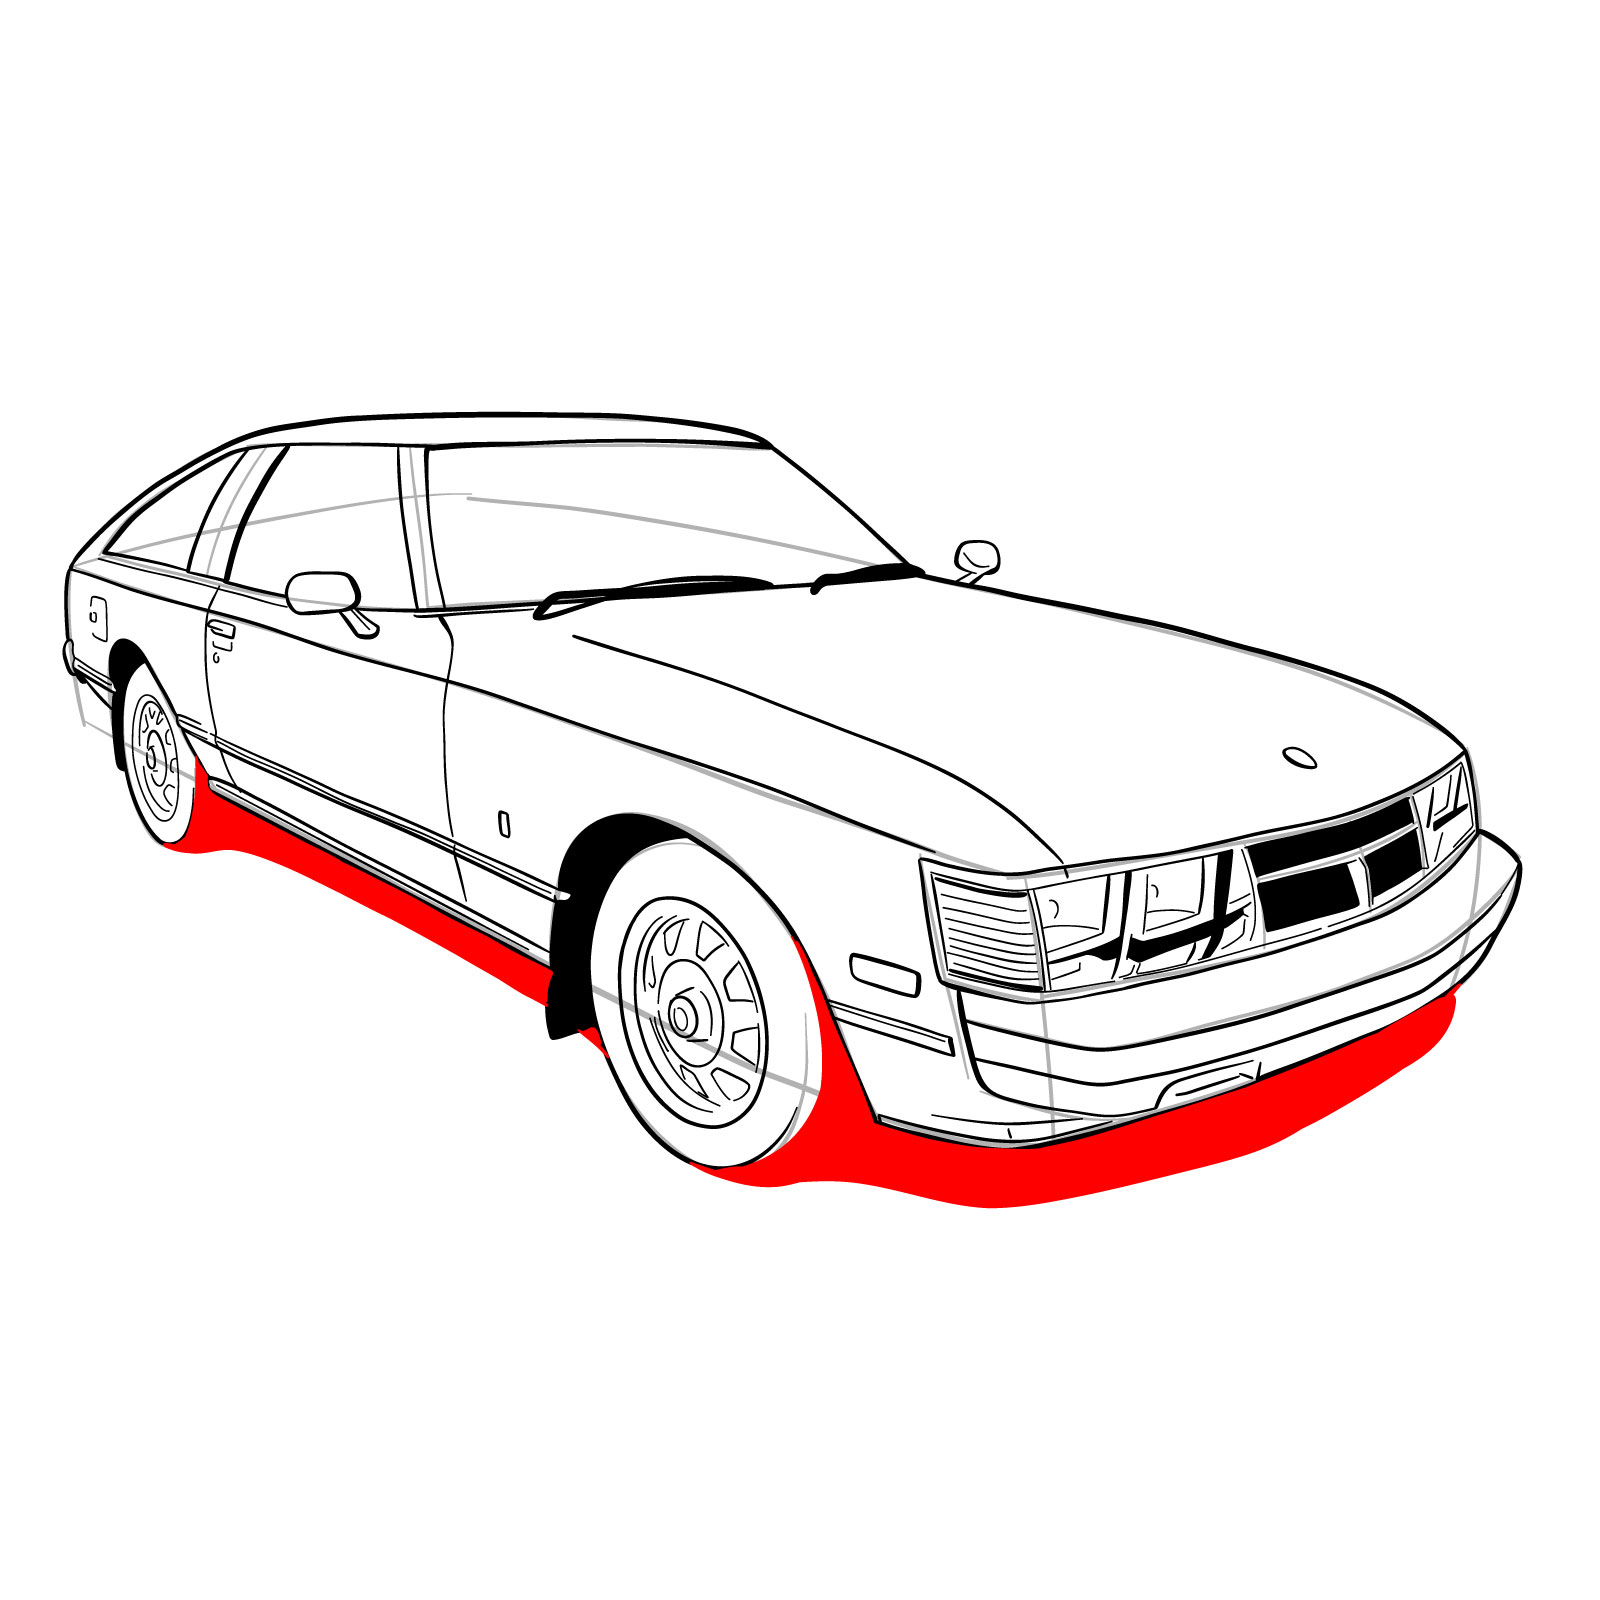 How to draw a 1979 Toyota Celica Supra Mk I Coupe - step 30